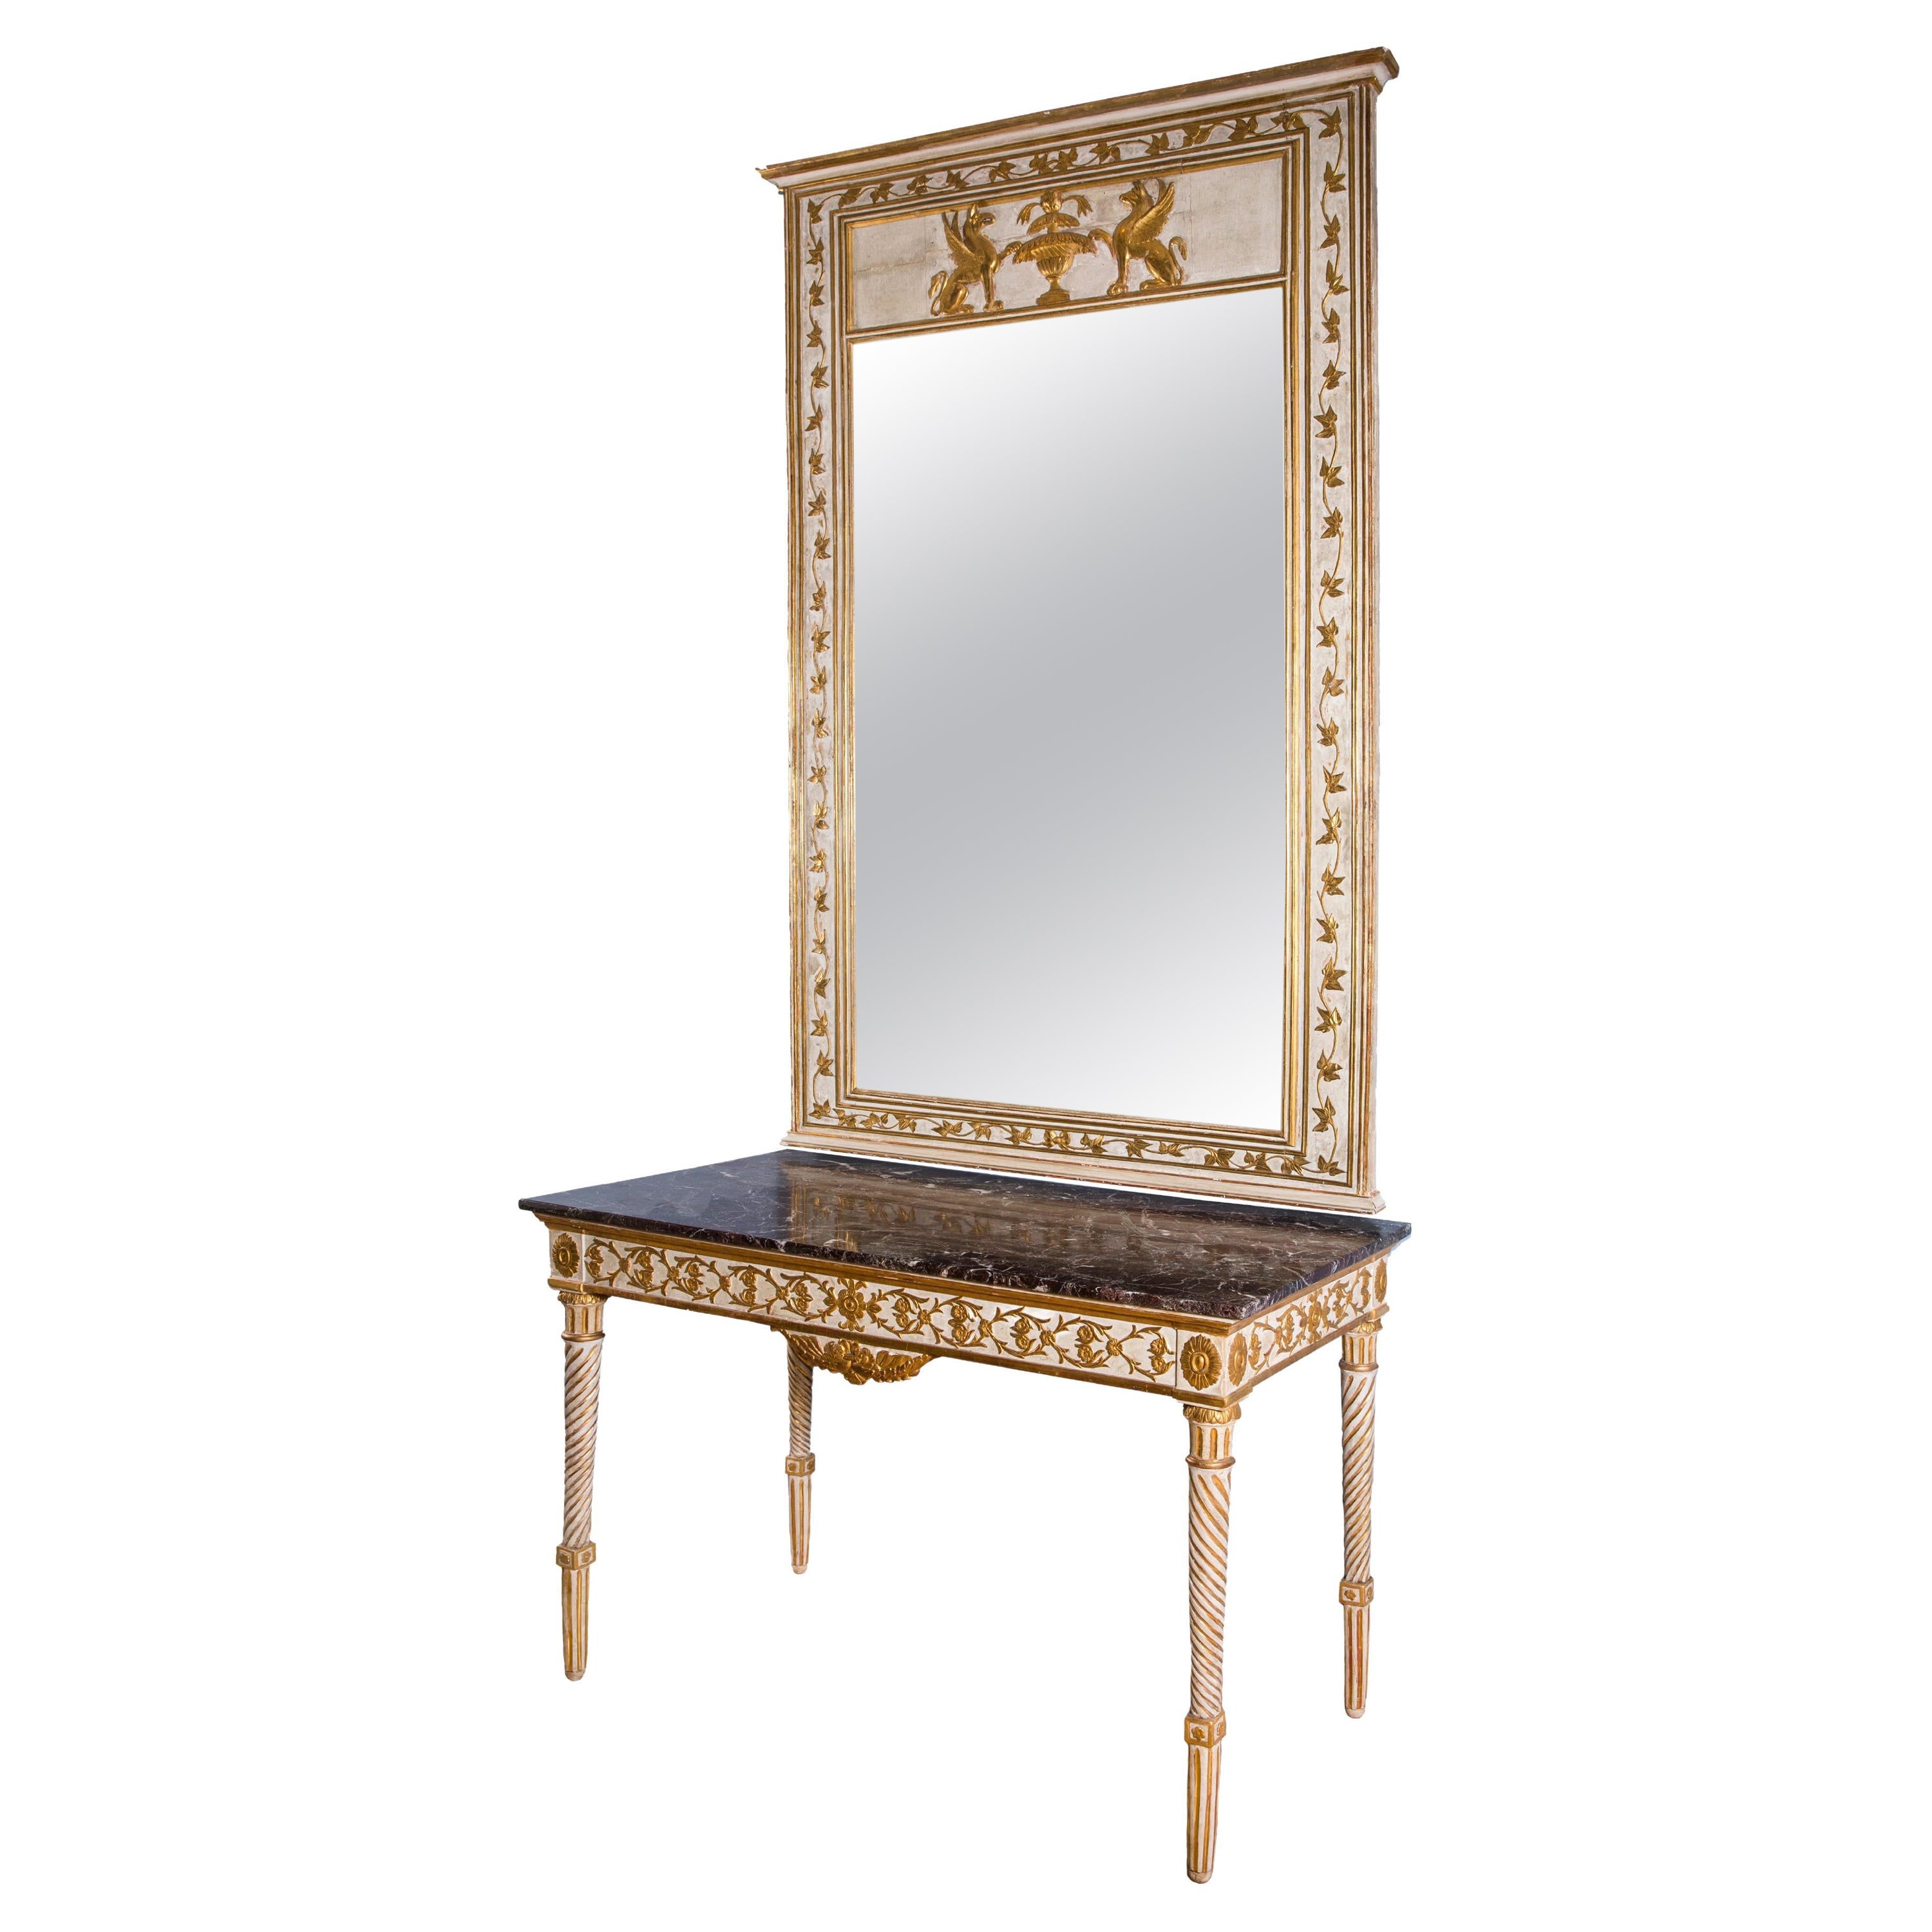 Konsolentisch aus vergoldetem Holz und Lack im Louis-XVI-Stil mit Spiegel